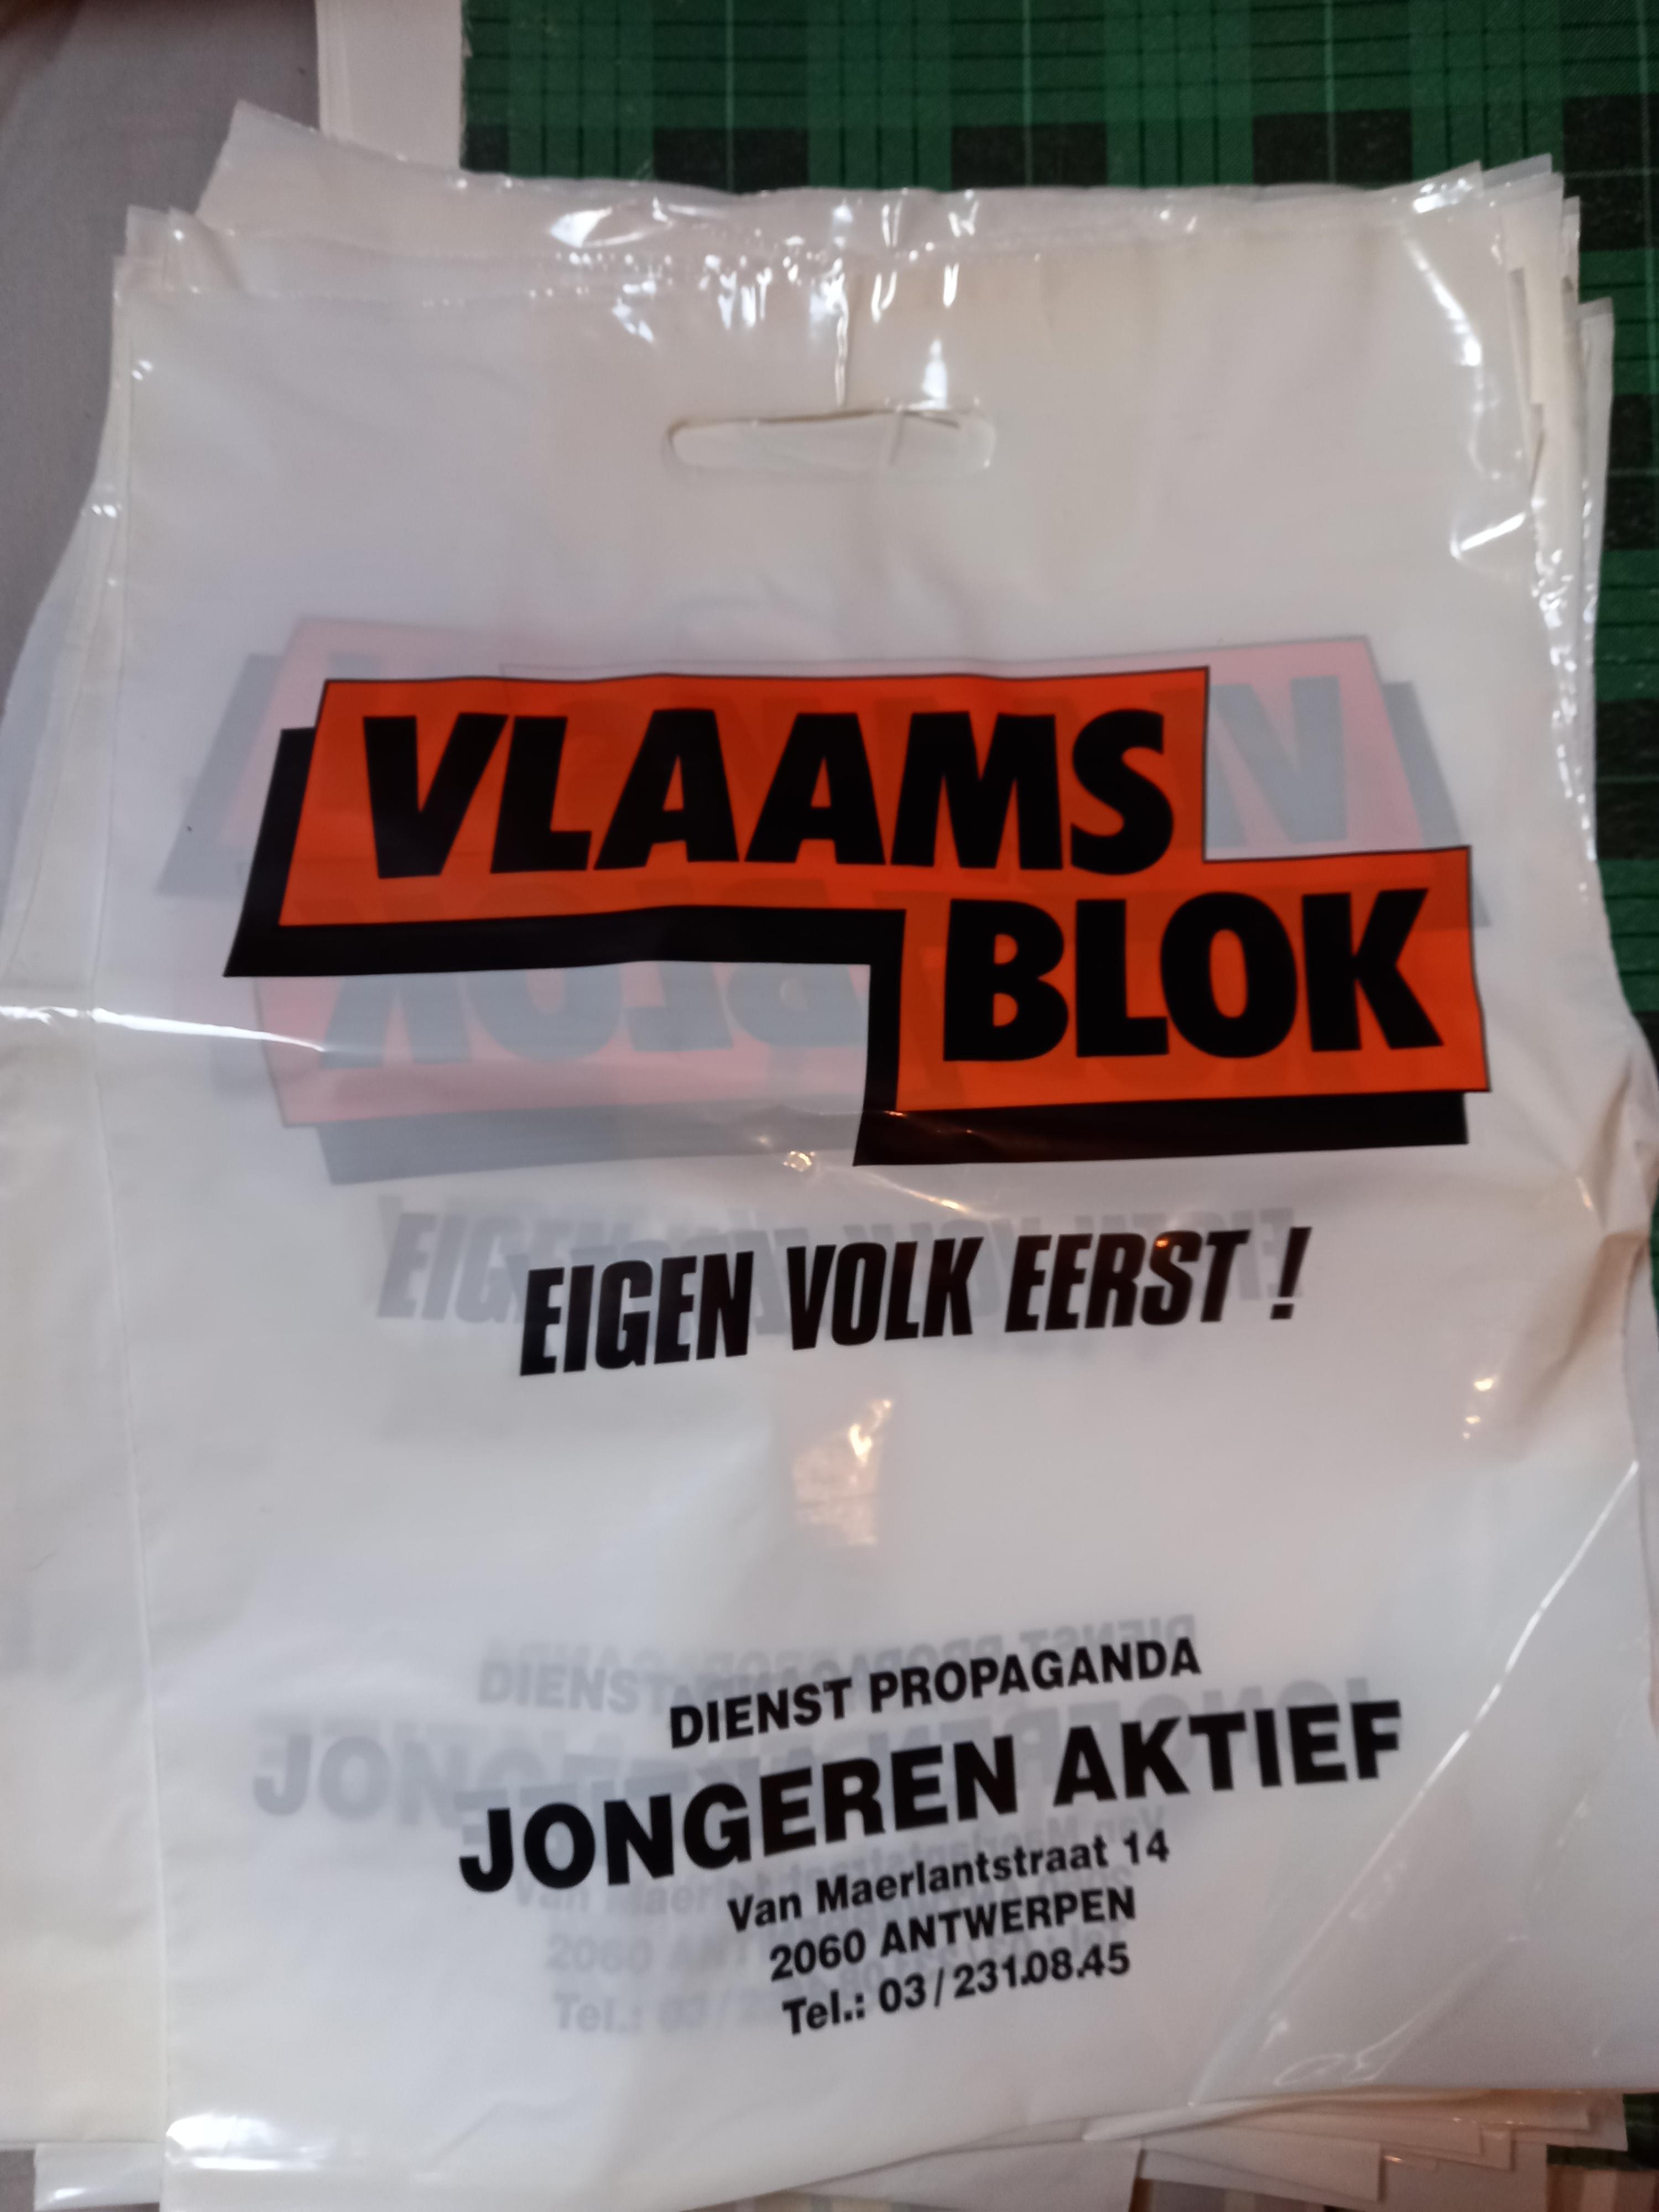 Zakje Vlaams Blok/Jongeren Aktief